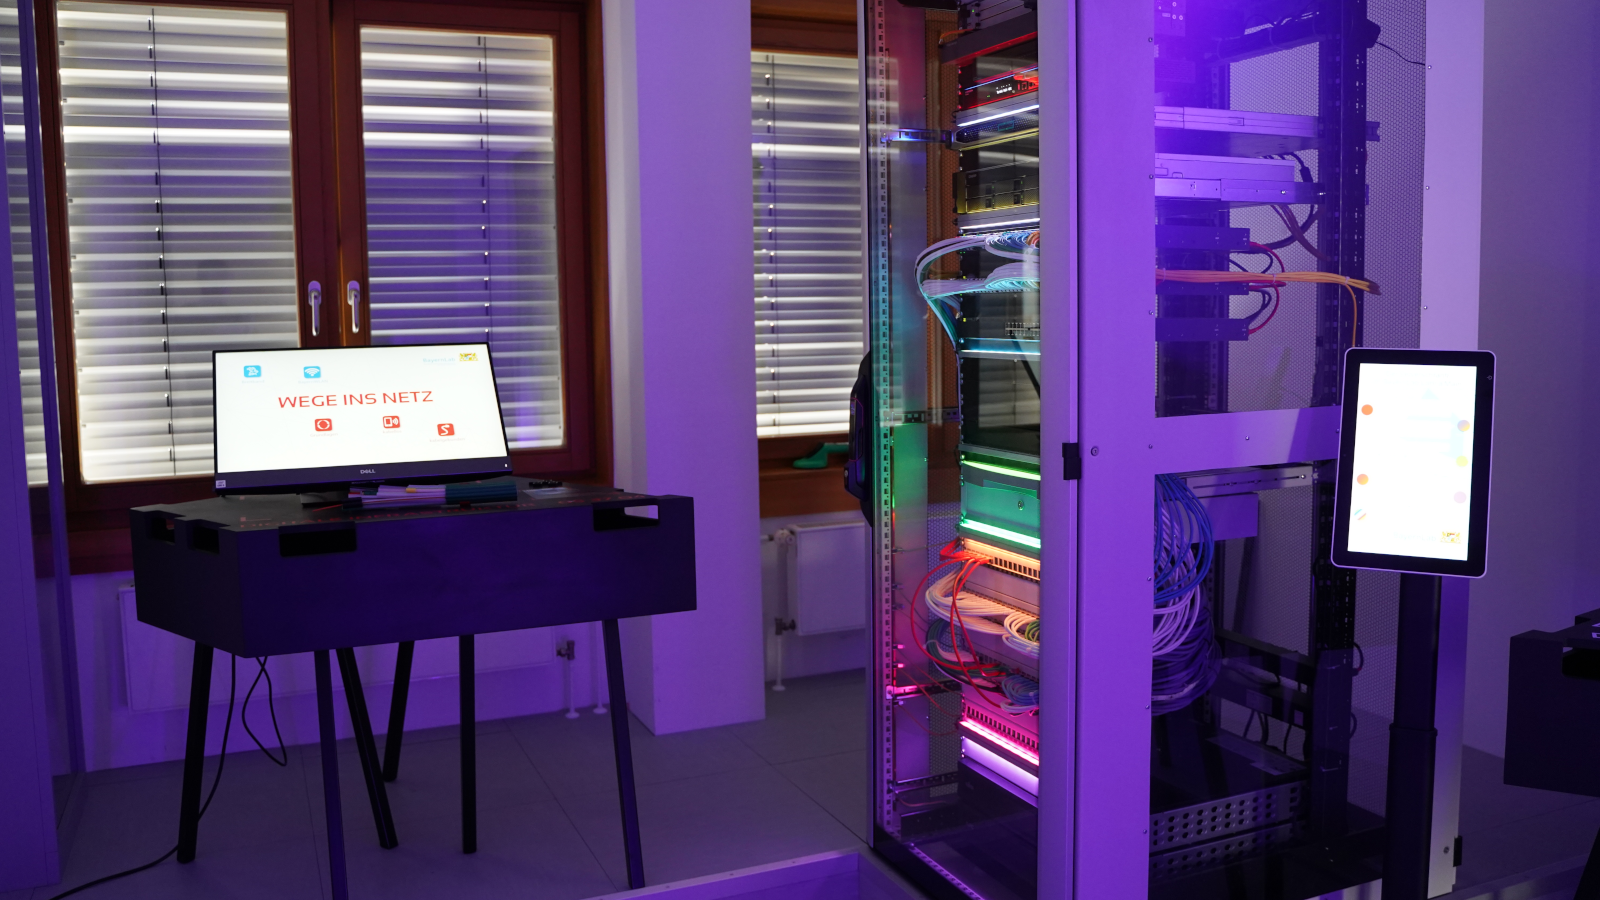 links wird ein All-in-One-PC gezeigt, an dem ausführliche Infos zum Thema Wege ins Netz abgerufen werden können, rechts im Bild ein, mit farbigen LEDs beleuchteter Serverschrank.